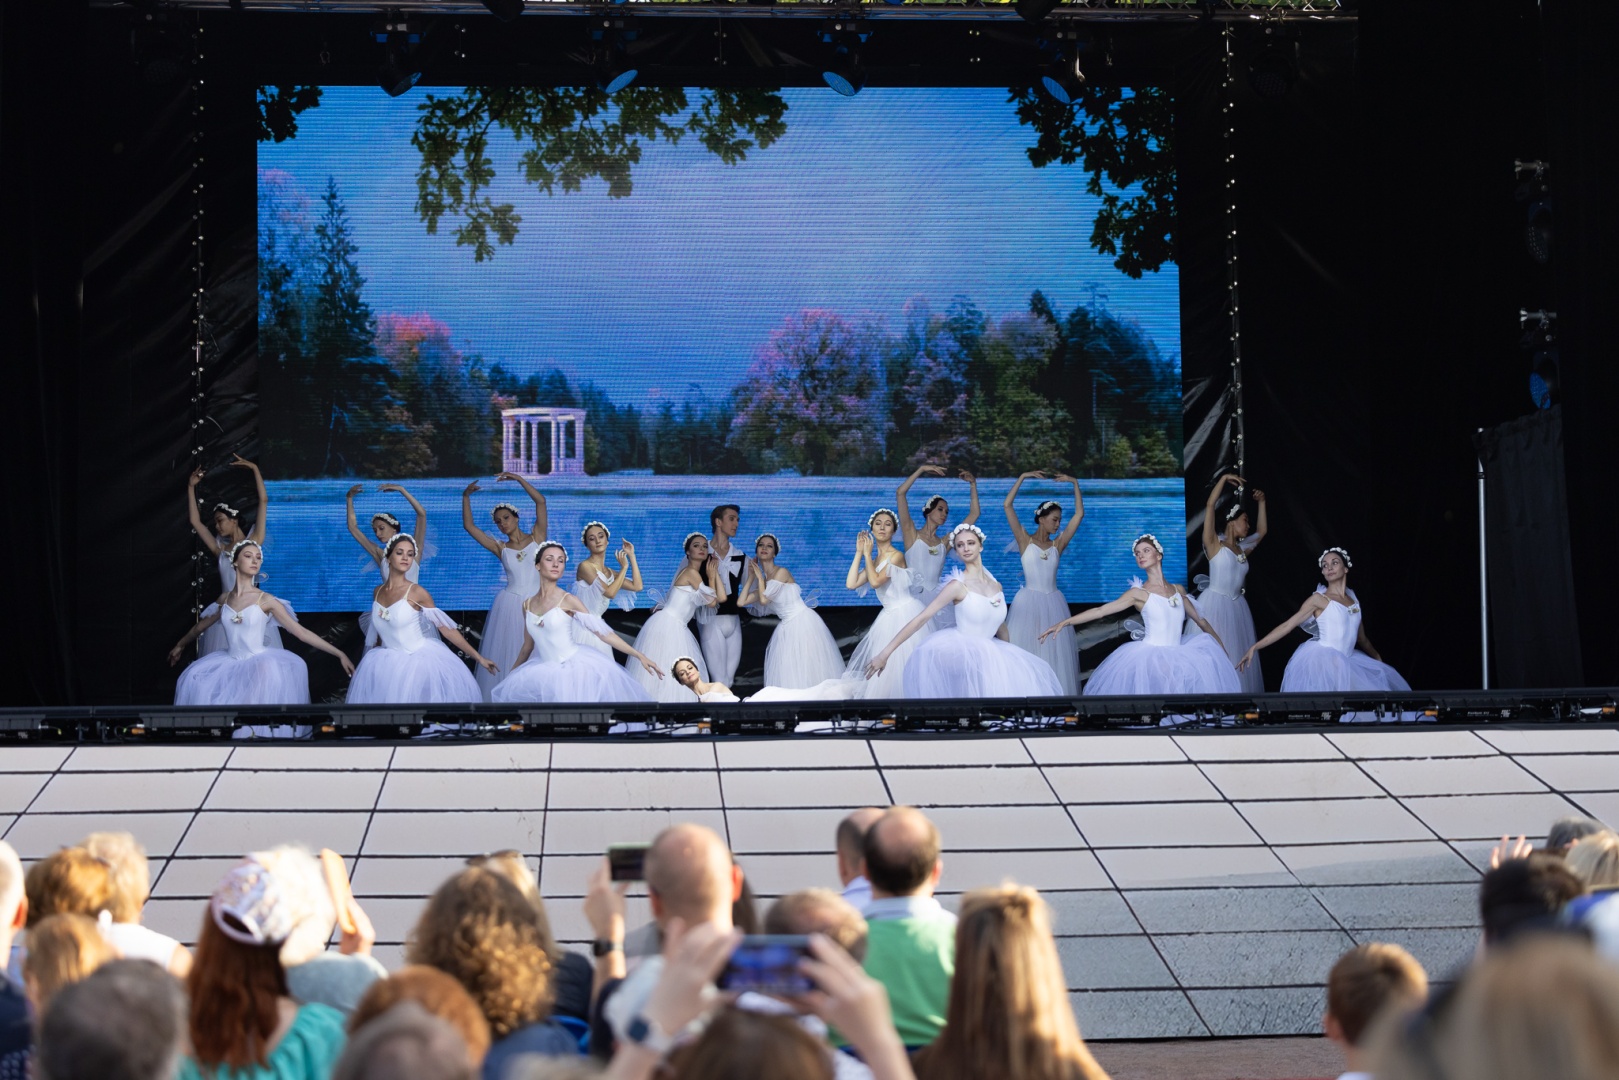  Более 1 млн зрителей посмотрели балет под открытым небом Петергофа